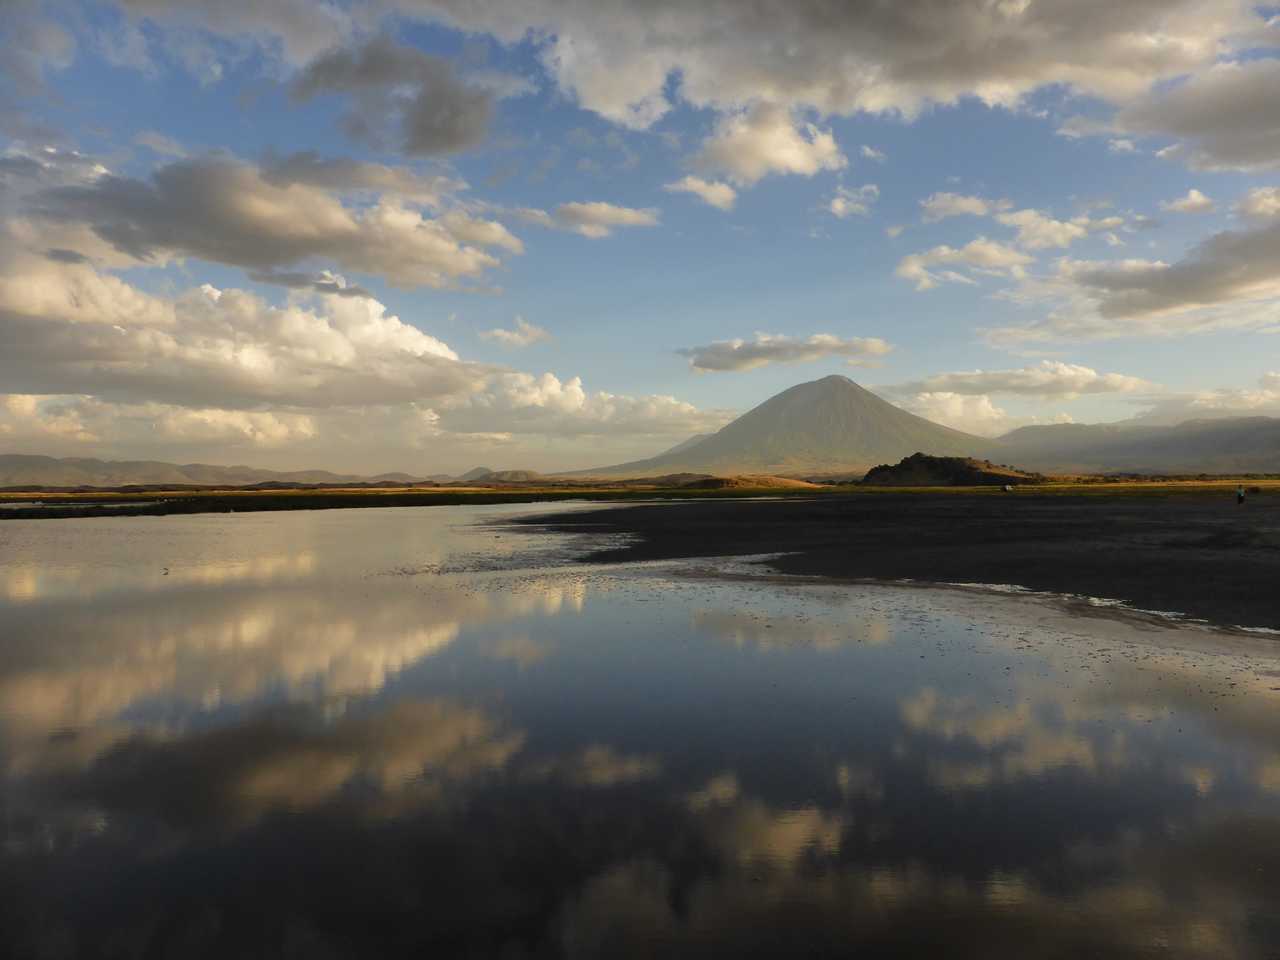 Reflet du volcan Lengai sur le lac Natron en Tanzanie